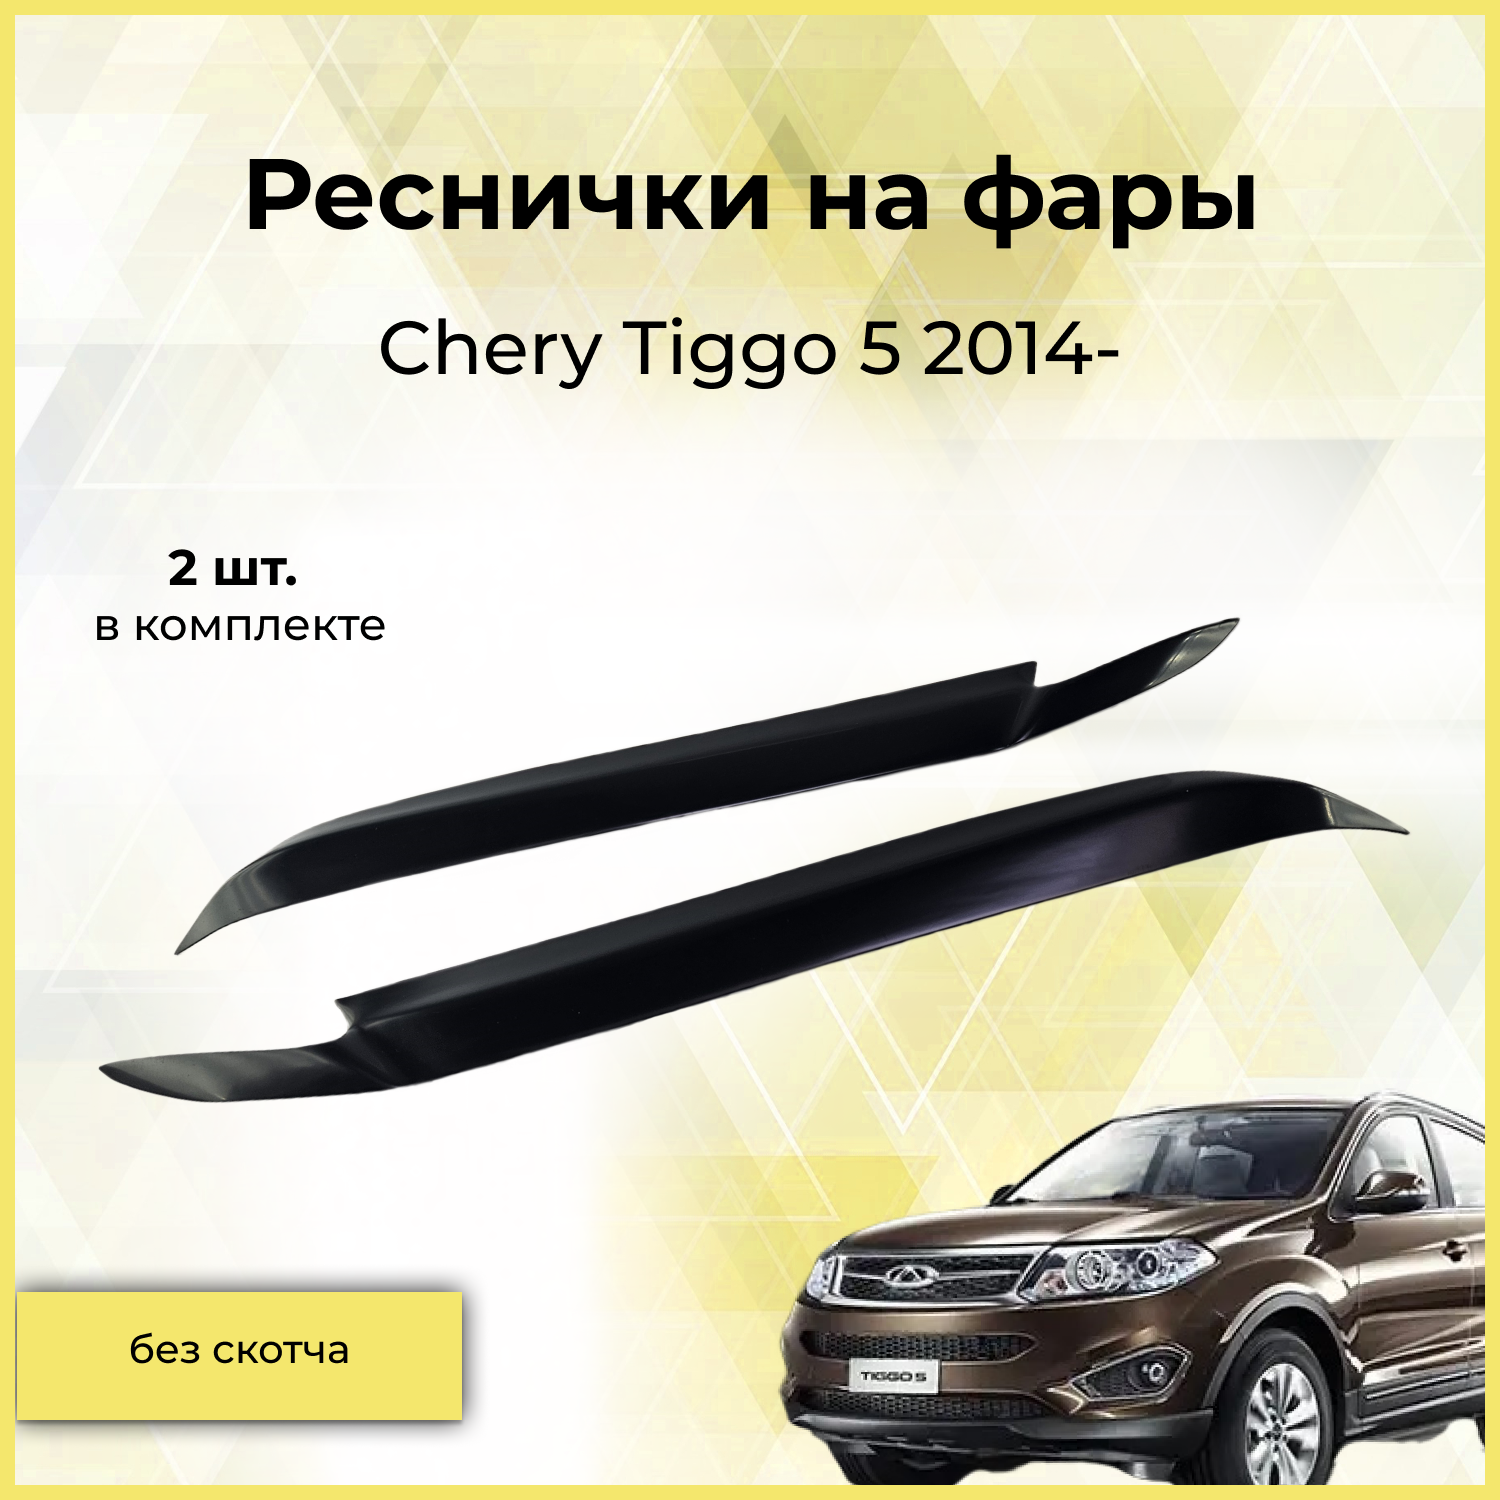 Реснички на фары / Накладки на передние фары для Chery Tiggo (Чери Тигго) 5 2014-